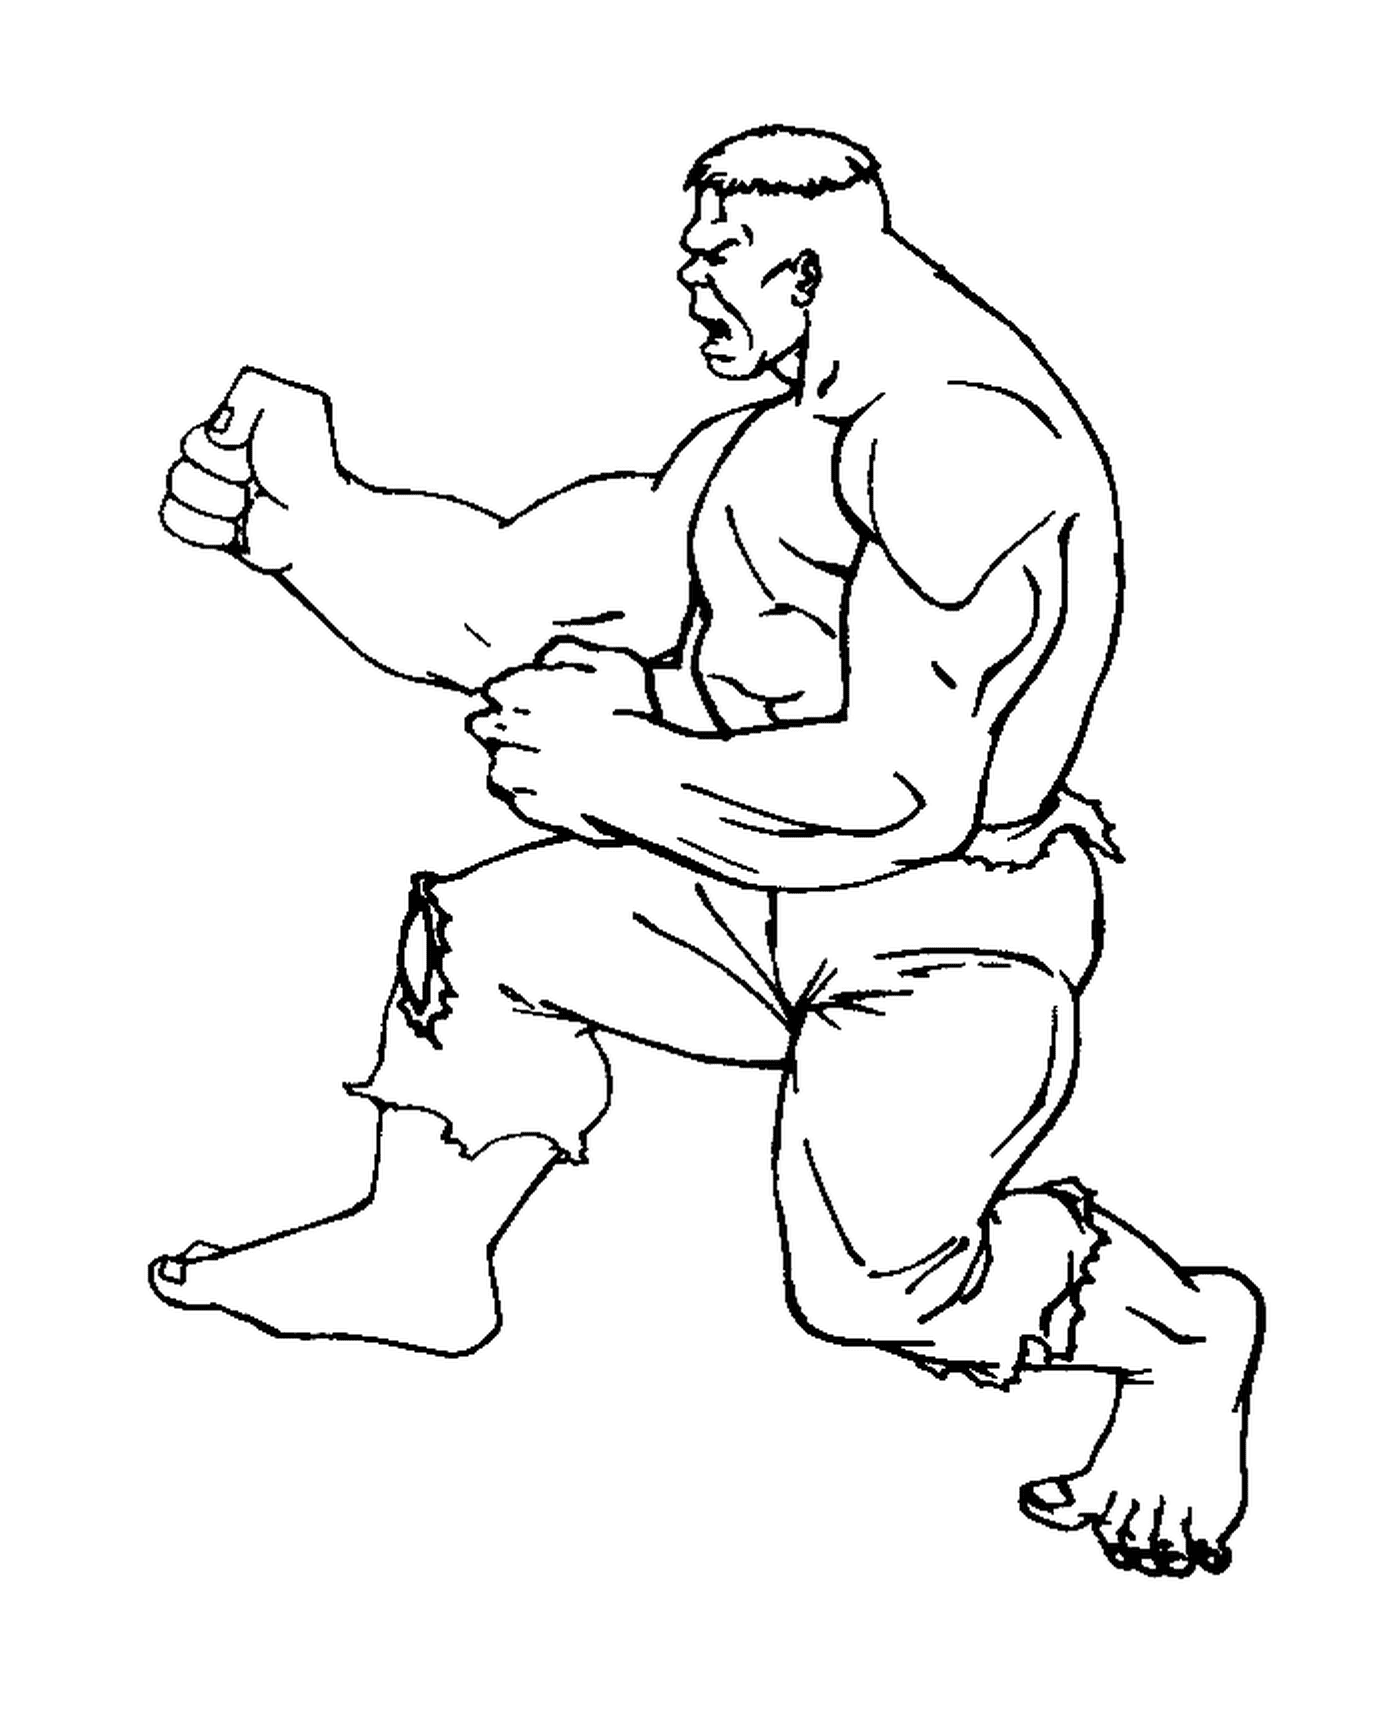  Hulk practises karate 